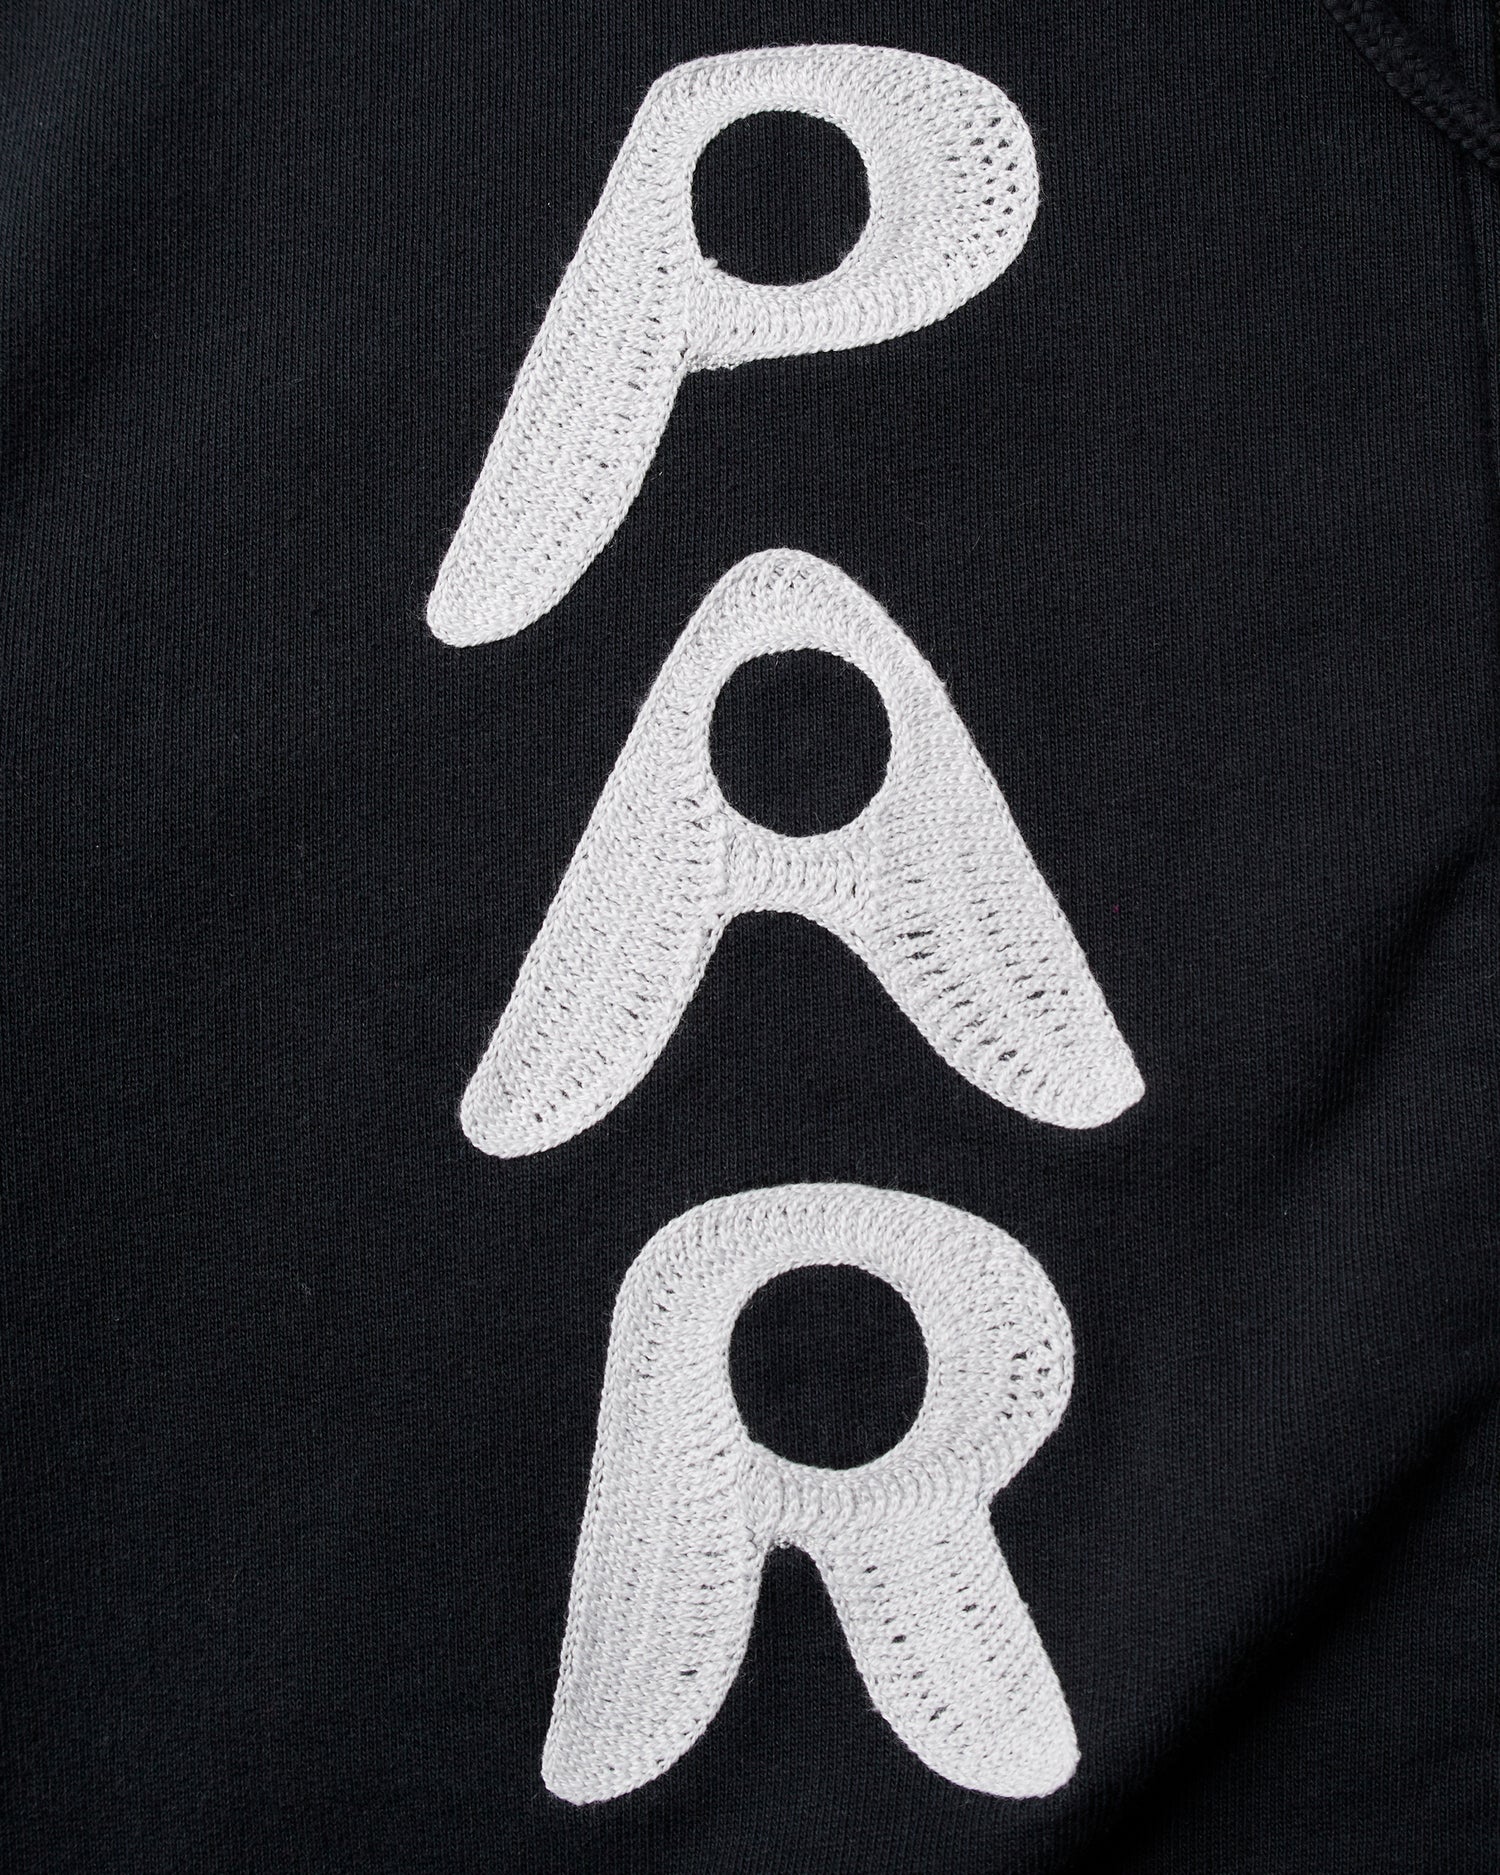 byParra Zipped Pigeon Zip Hooded Sweatshirt (Black)